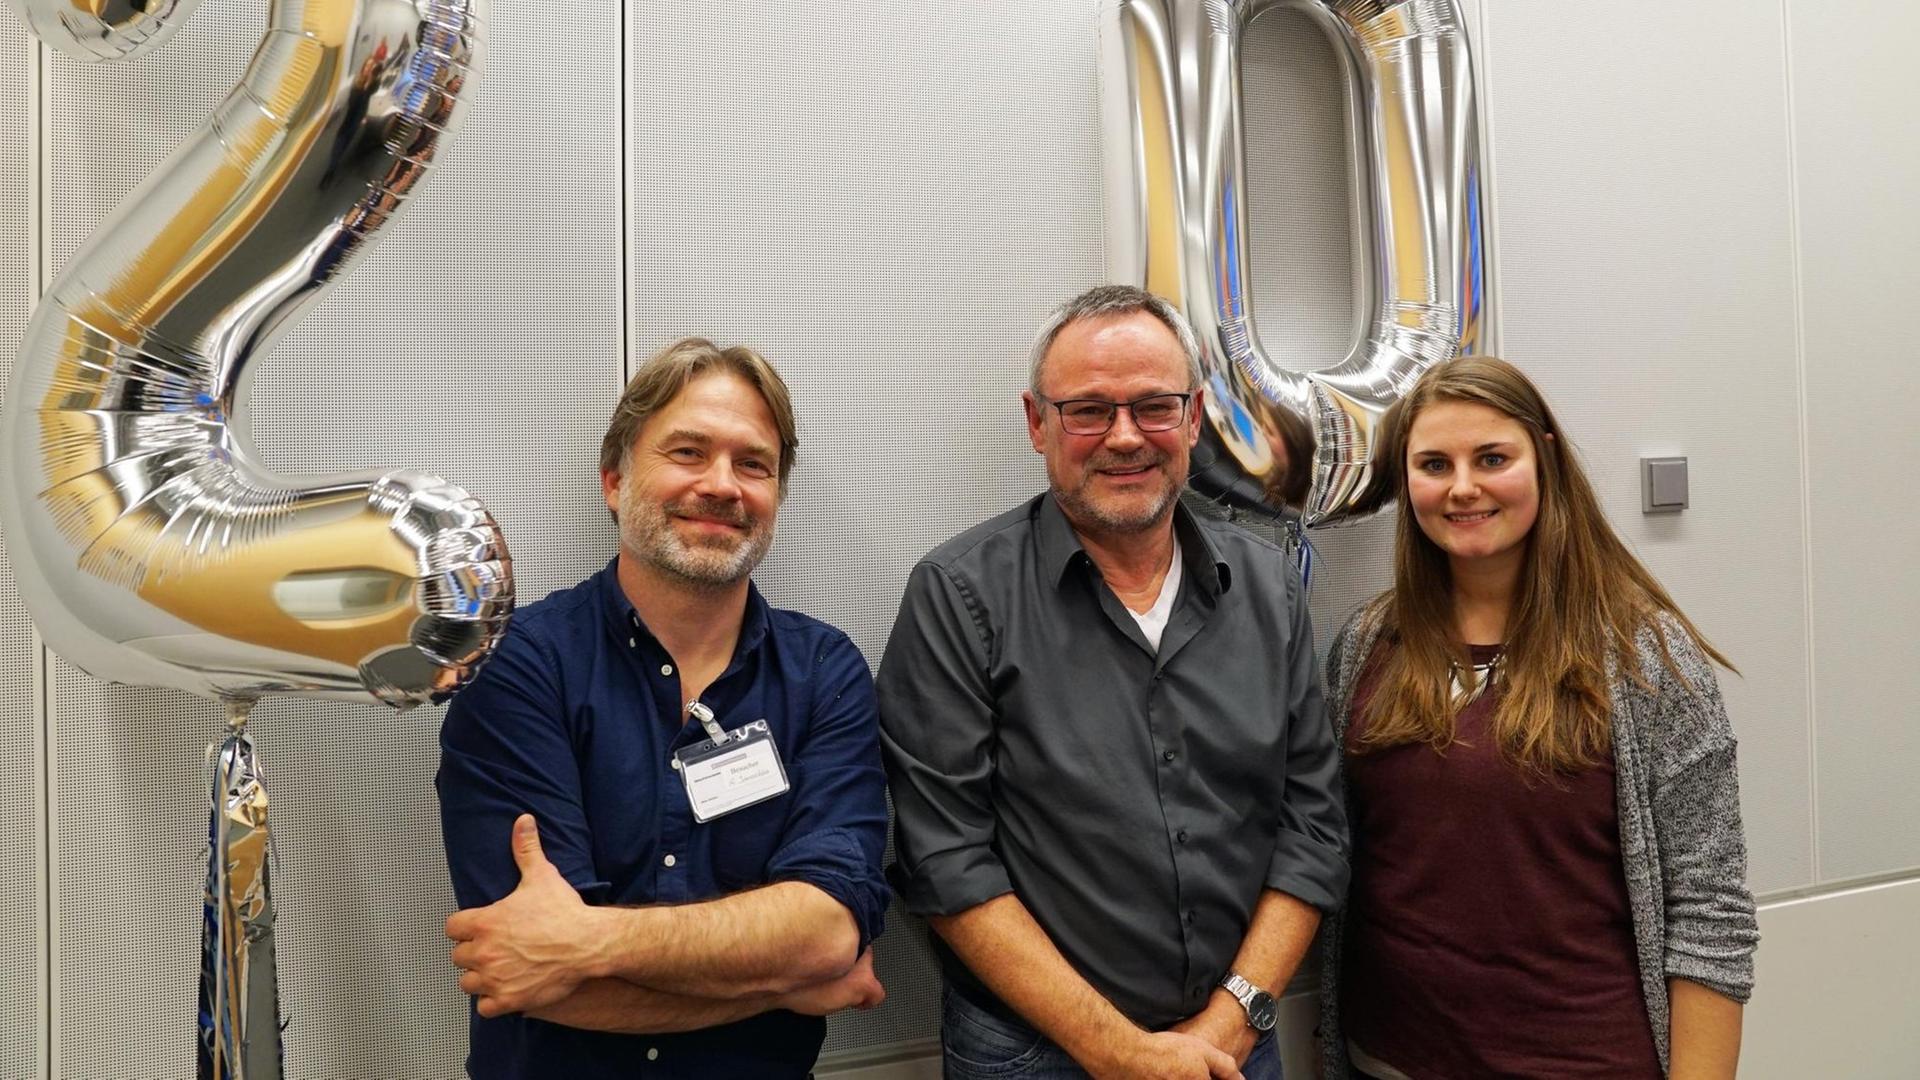 Oliver Janoschka, Prof. Jürgen Handke, Louisa Oesterle (v.l.) stehen im Studio. Im Hintergrund schweben silberfarbene Luftballons, welche die Zahl zwanzig bilden.